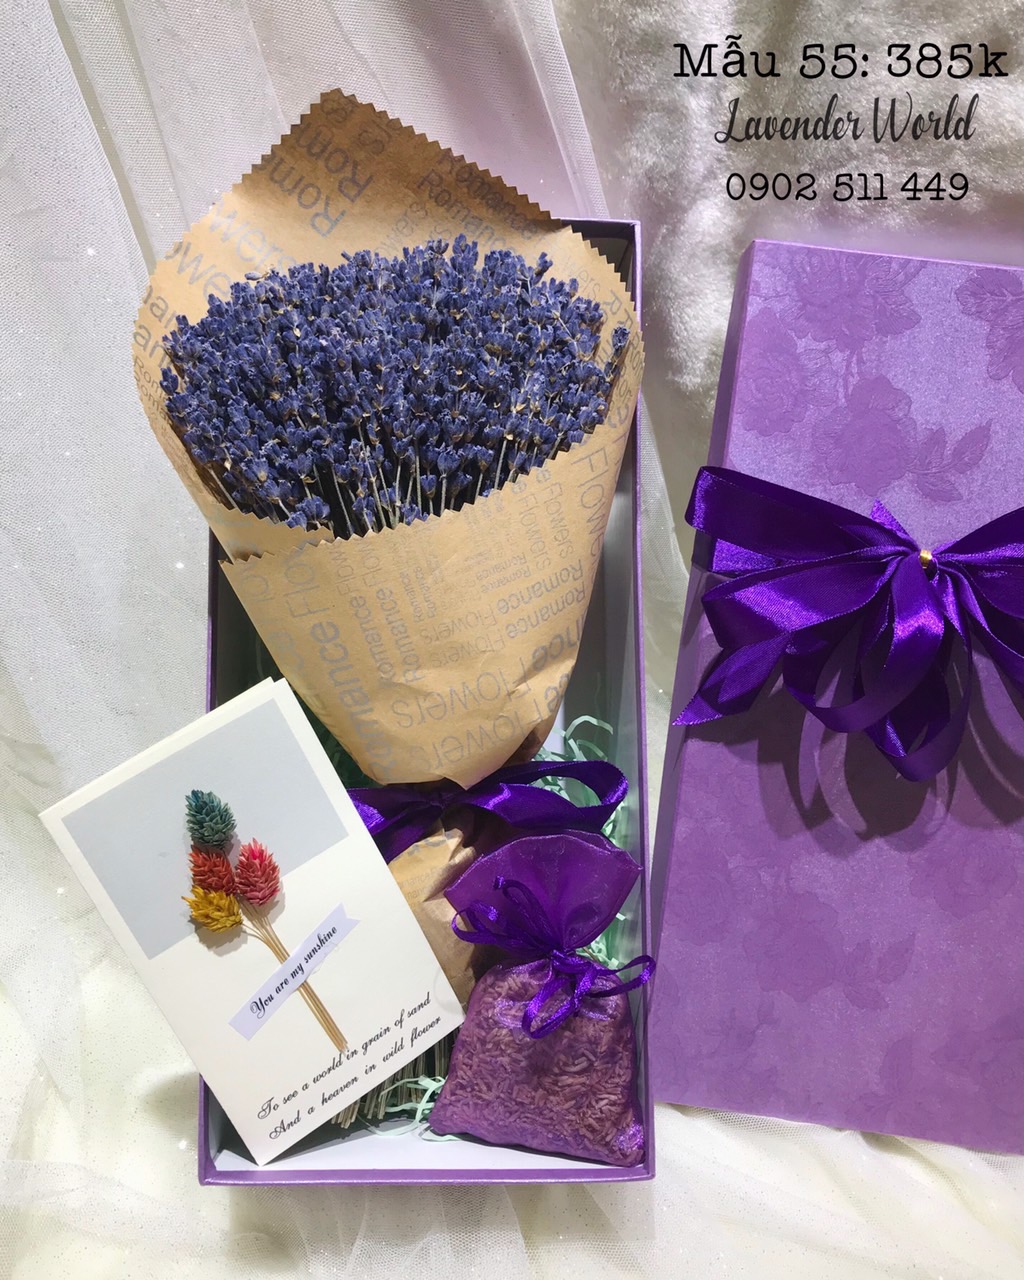 mau 55 set qua hoa lavender kho